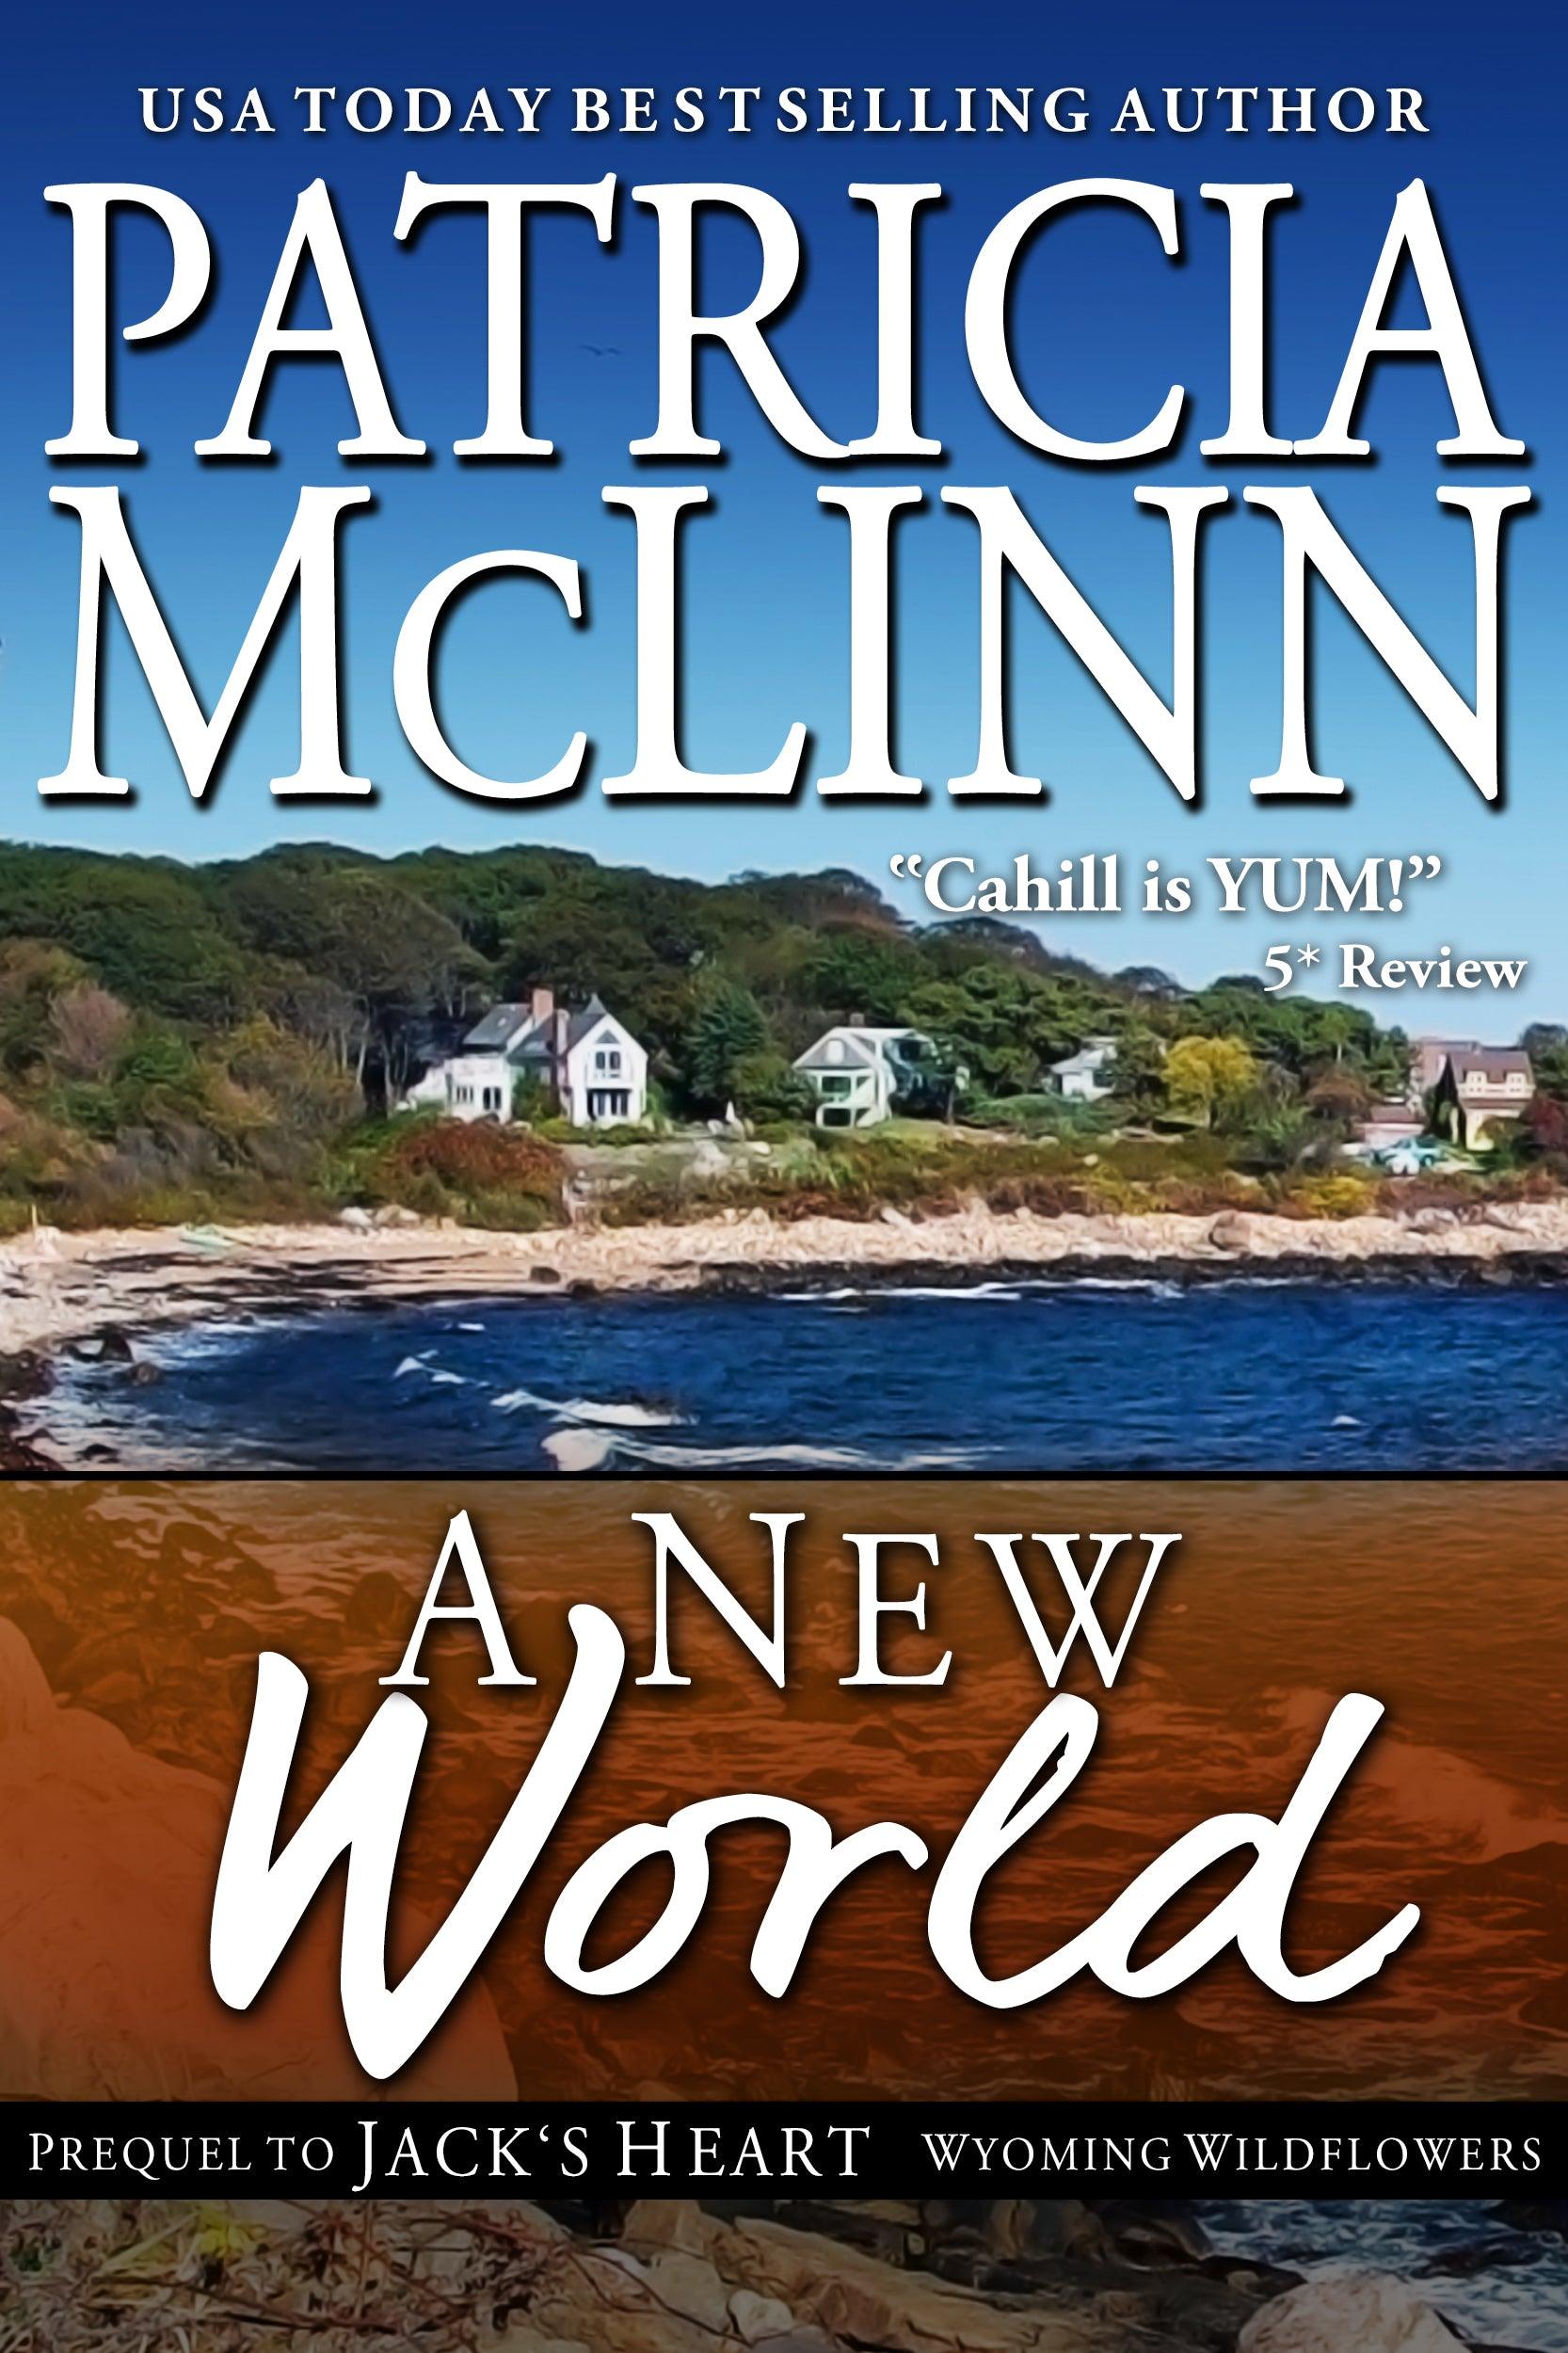 A New World - Patricia McLinn